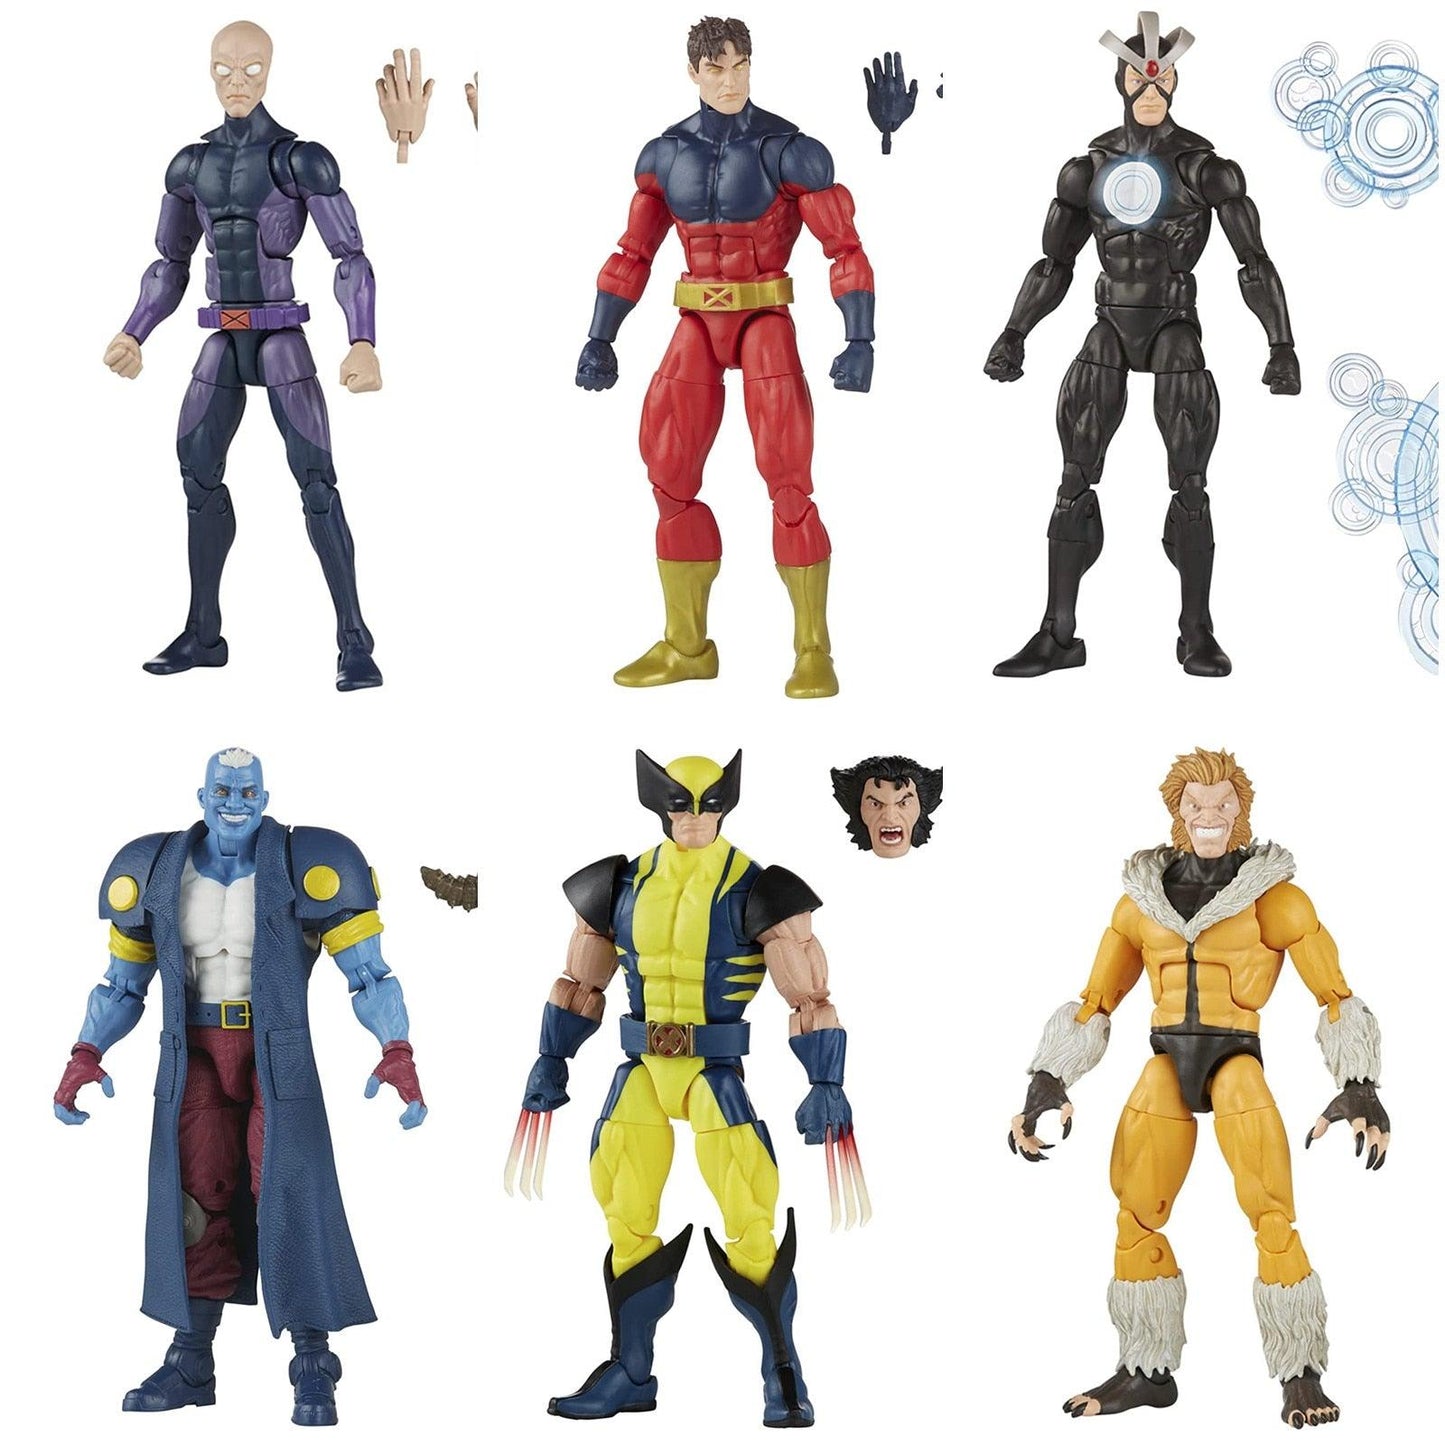 Action Figure Personagens X Men Legends - NERD BEM TRAJADO